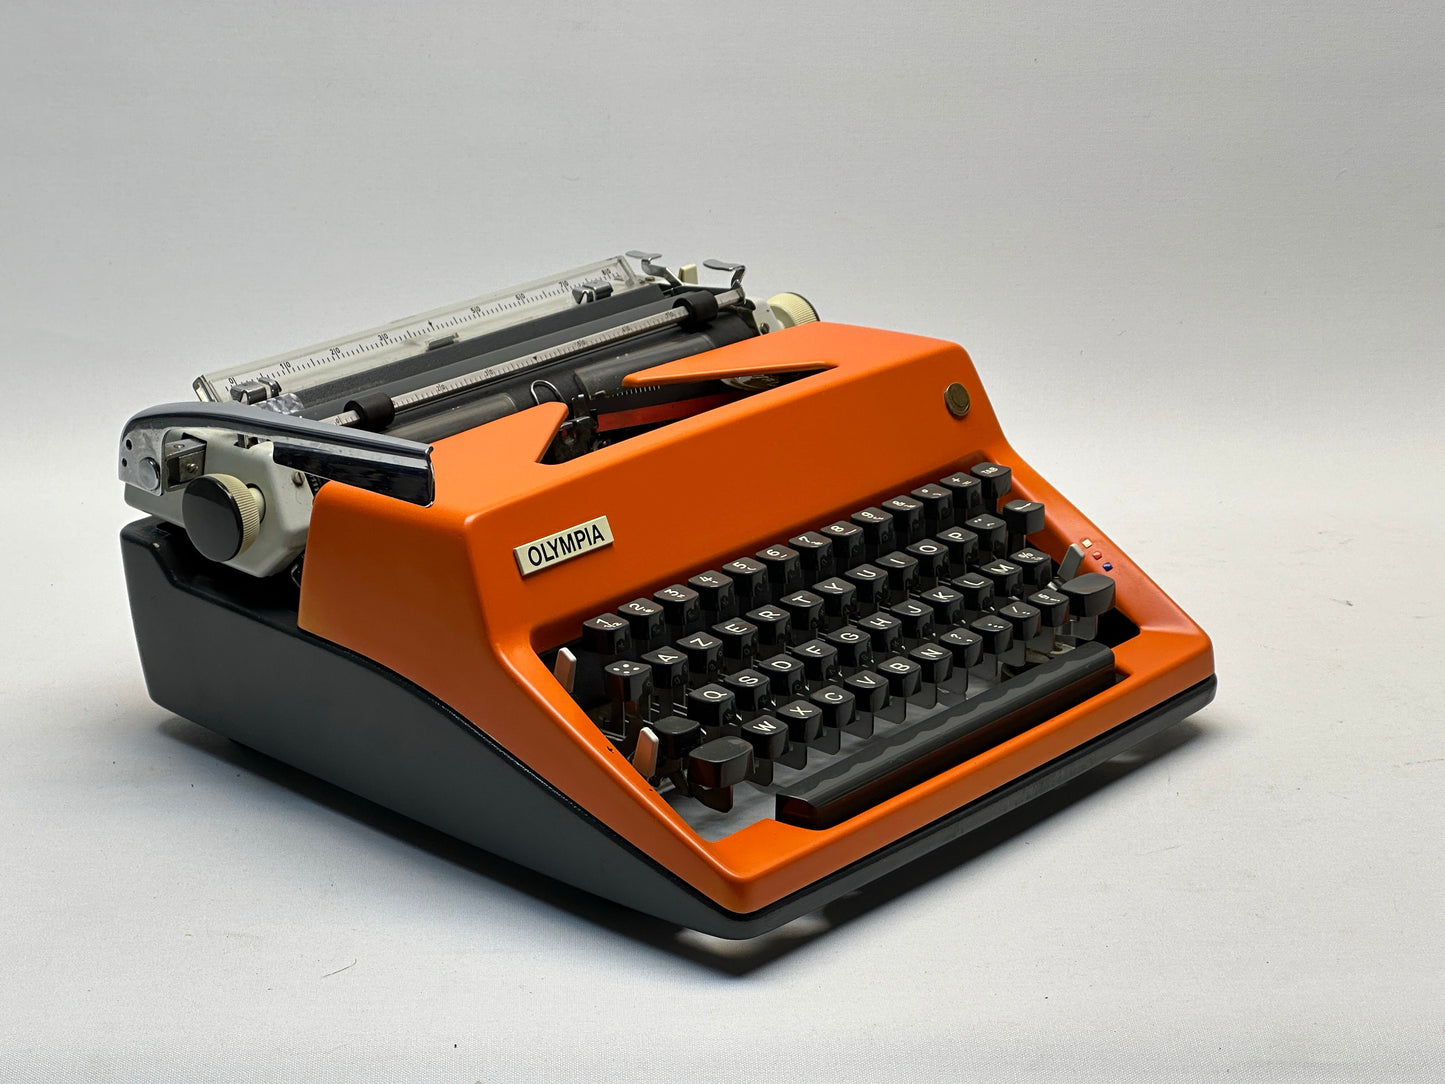 Olympia Monica Typewriter - AZERTY Keyboard, Black Keys, Orange Cover, Antique Manual Typewriter